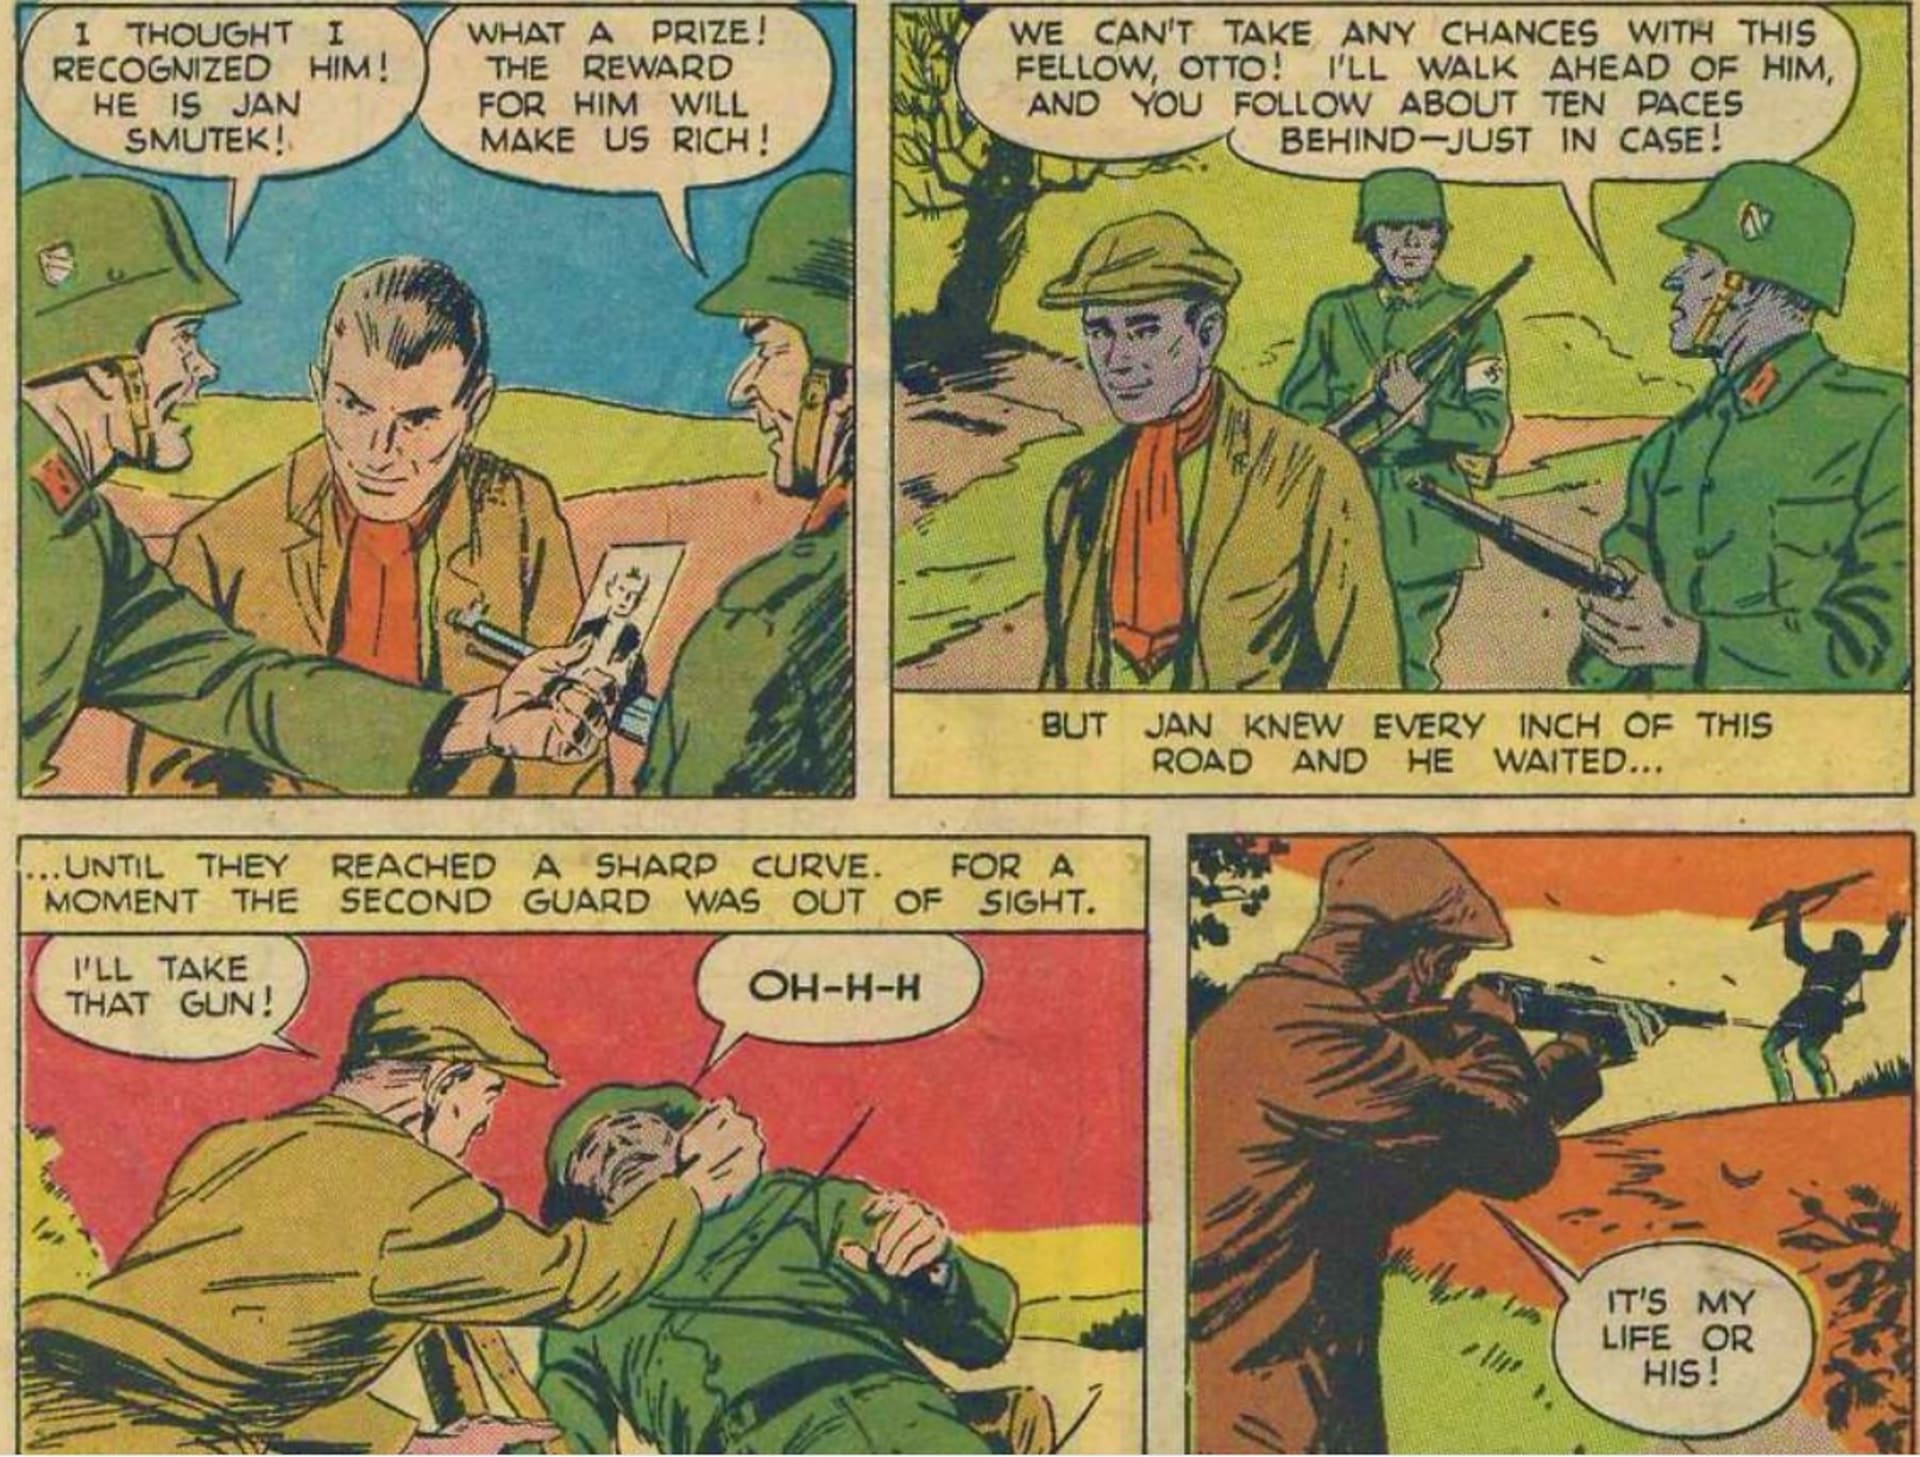 Komiks o Janu Smudkovi, který už v roce 1943 vyšel ve Spojených státech. Příběh nepolapitelného Jana se tehdy stal mezinárodní legendou na spojenecké straně válečné fronty.